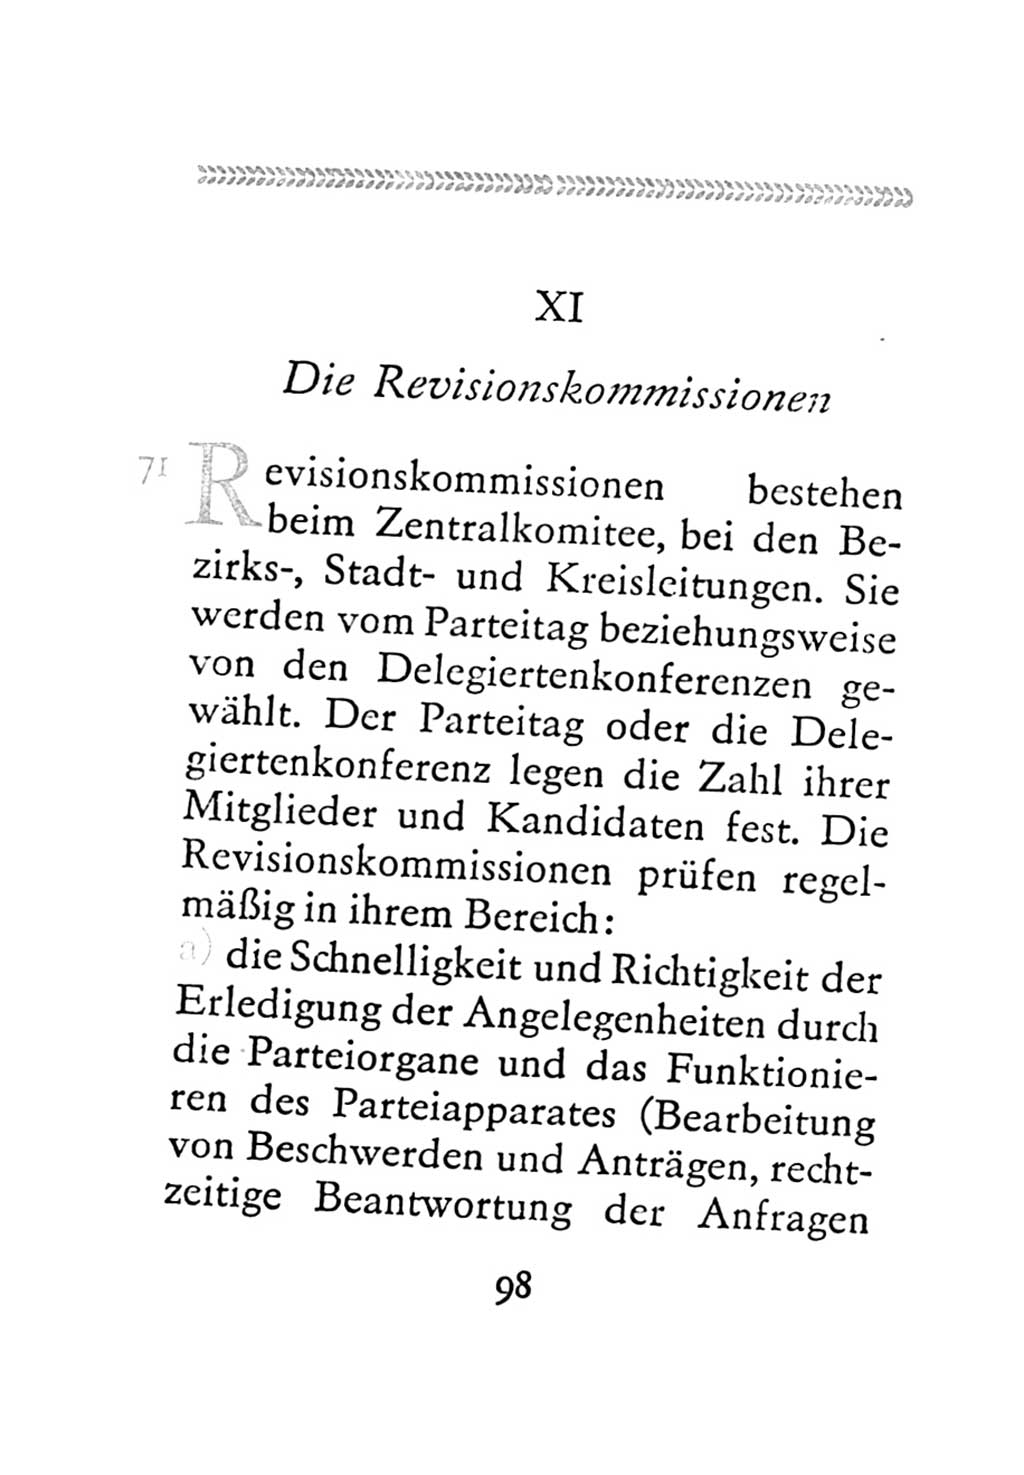 Statut der Sozialistischen Einheitspartei Deutschlands (SED) 1971, Seite 98 (St. SED DDR 1971, S. 98)